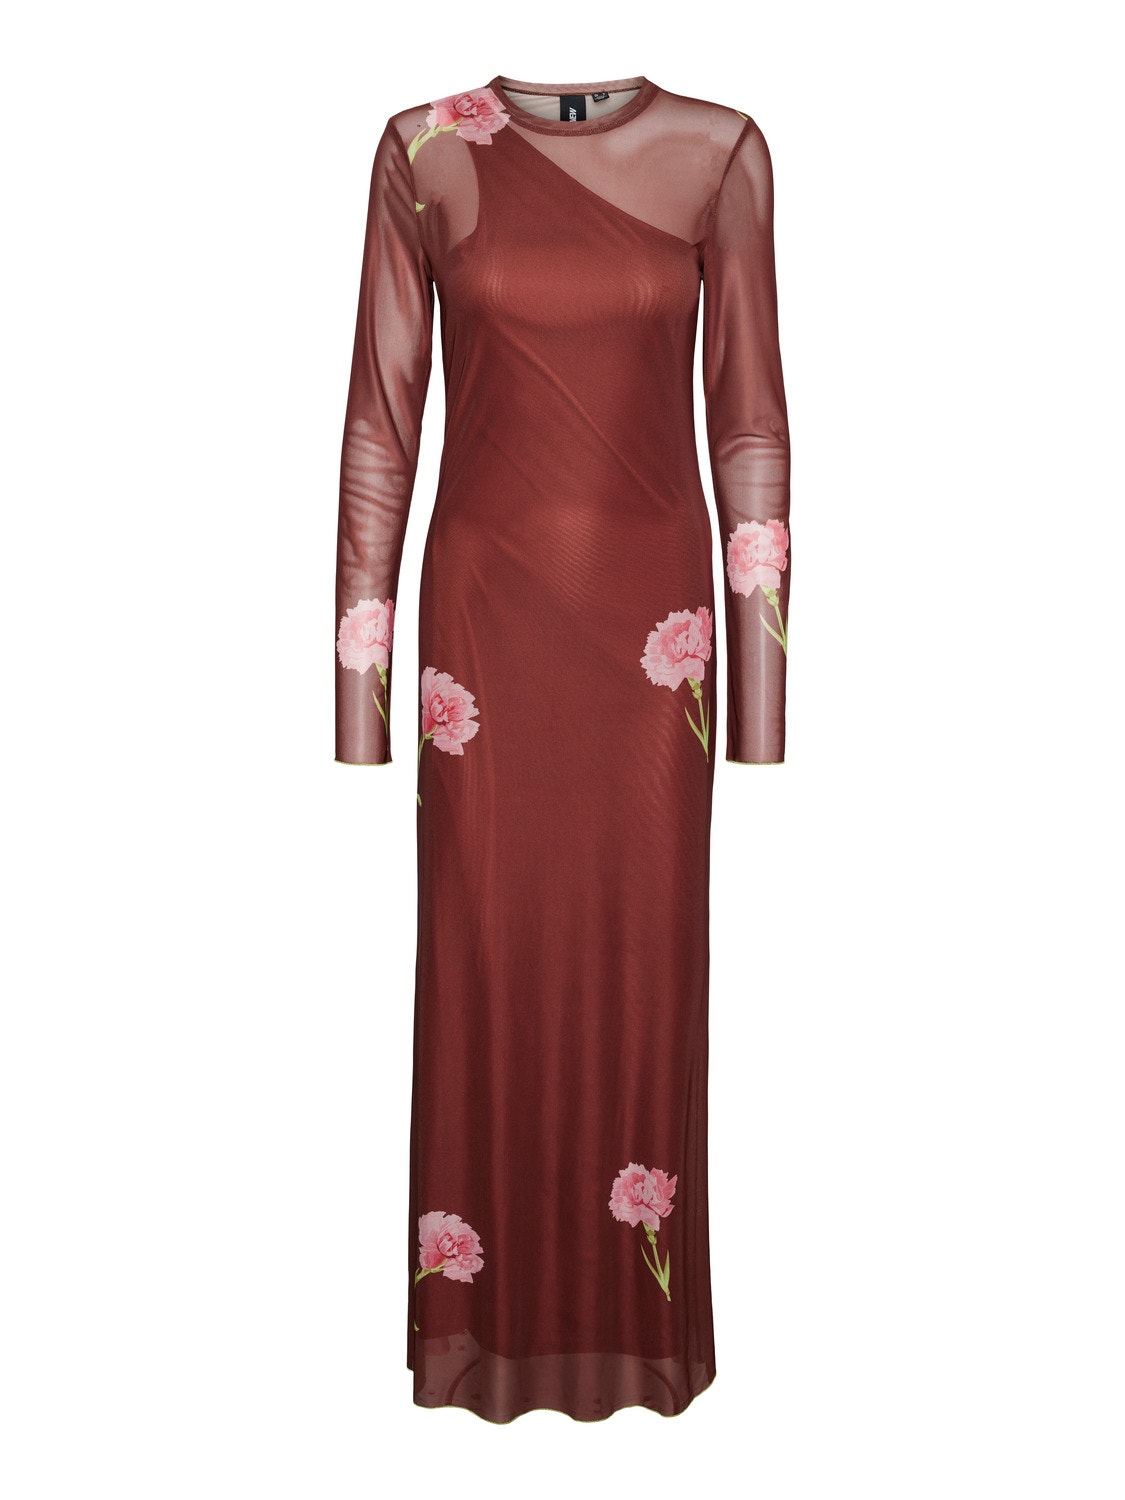 Vero Moda SOMETHINGNEW x SANDRA LAMBECK Lange jurk -Cherry Mahogany - 10306223